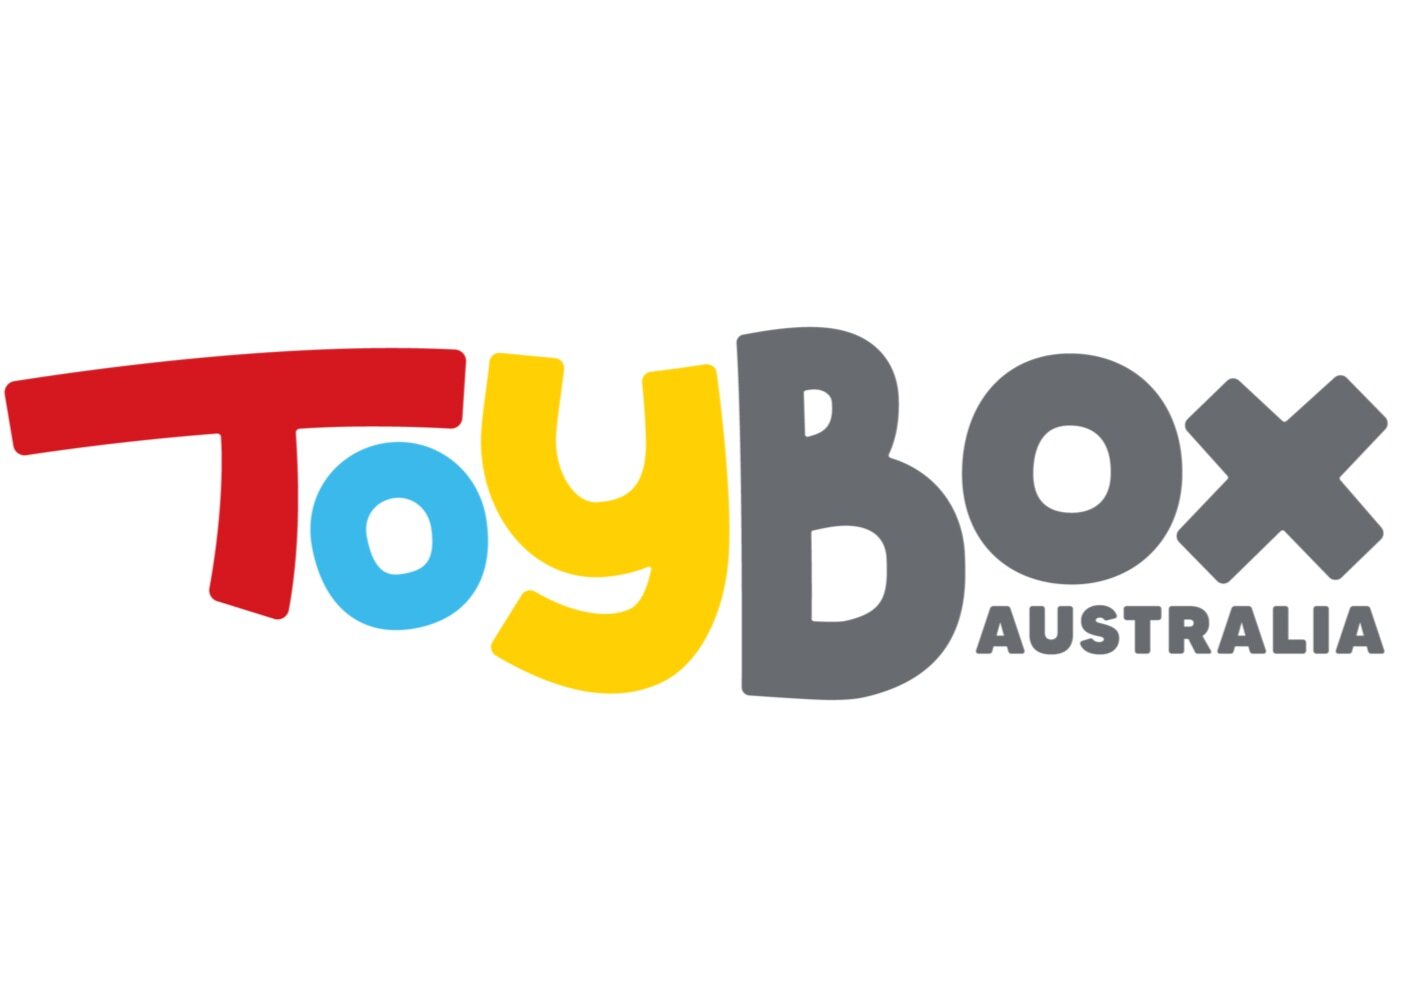 Toybox